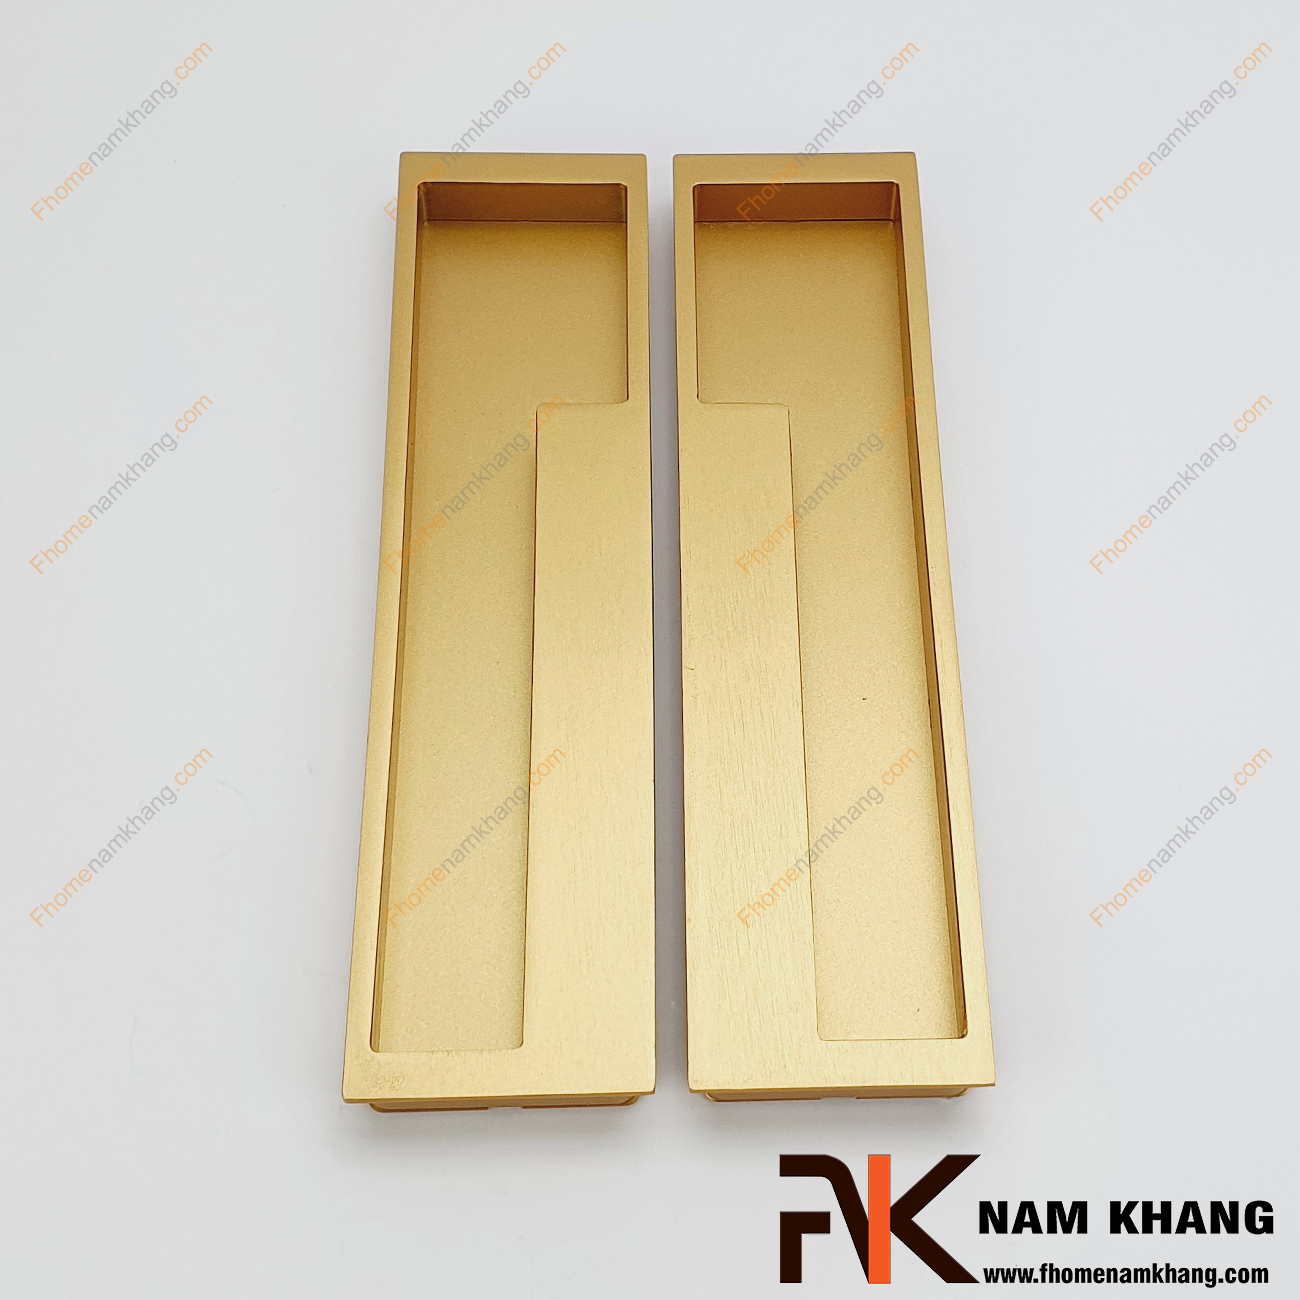 Tay nắm âm tủ màu vàng mờ NK438-192VM là loại tay nắm chuyên dùng cho các loại tủ đặt ở những nơi có không gian hạn chế hoặc dùng để nâng cao tính thẫm mỹ của sản phẩm